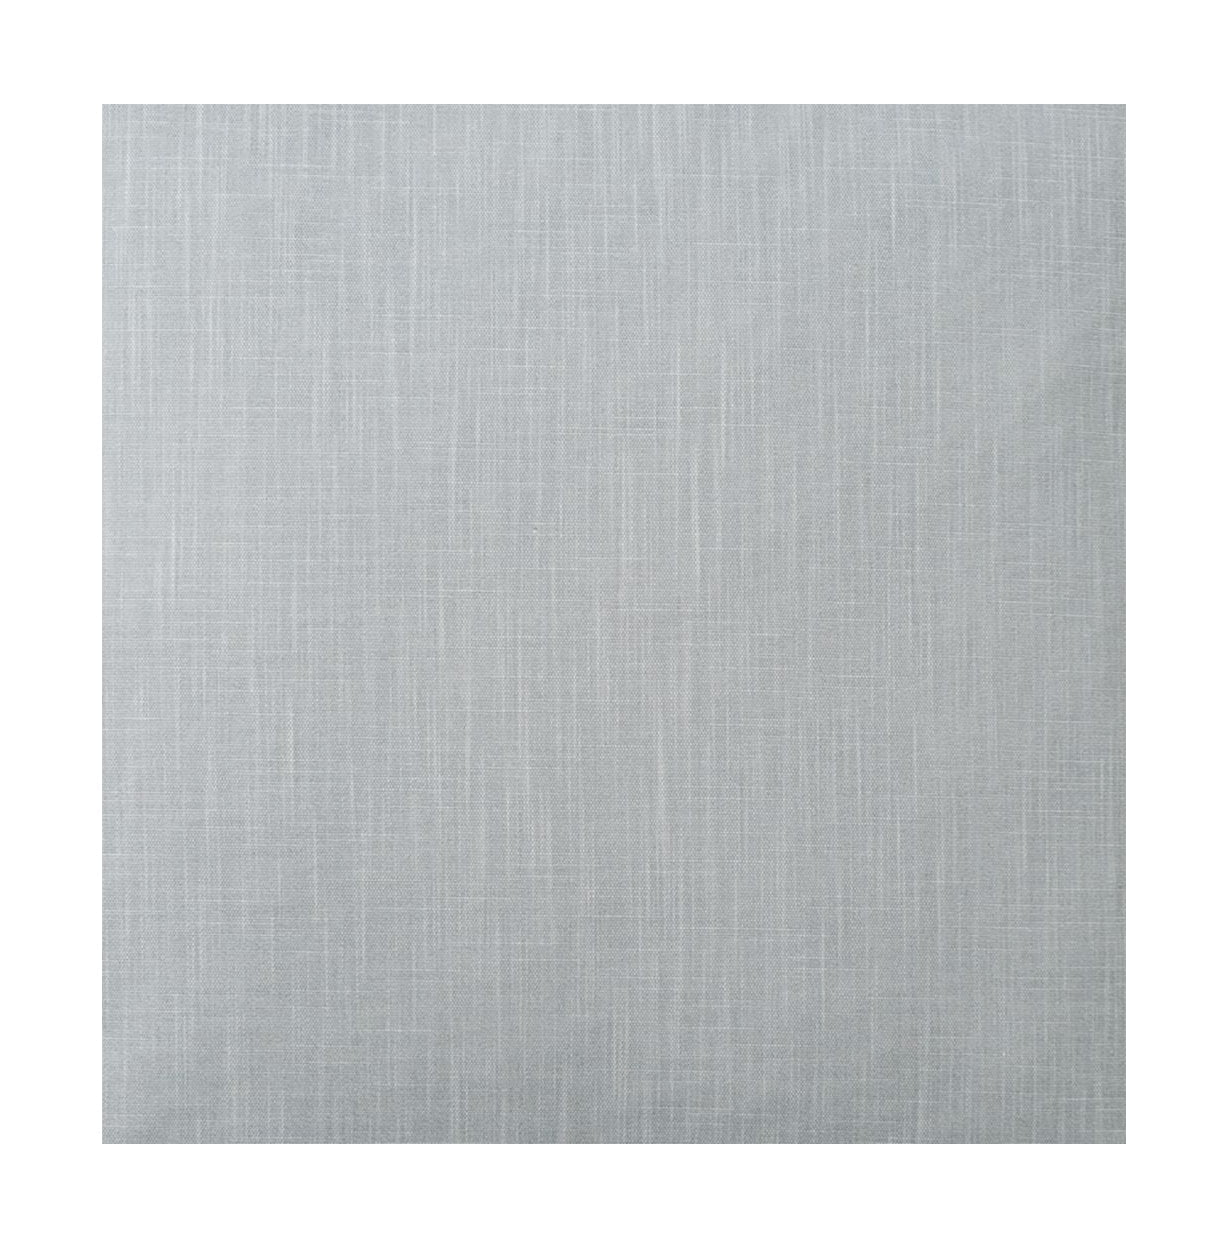 Spira Klotz -stofbreedte 150 cm (prijs per meter), licht rookblauw